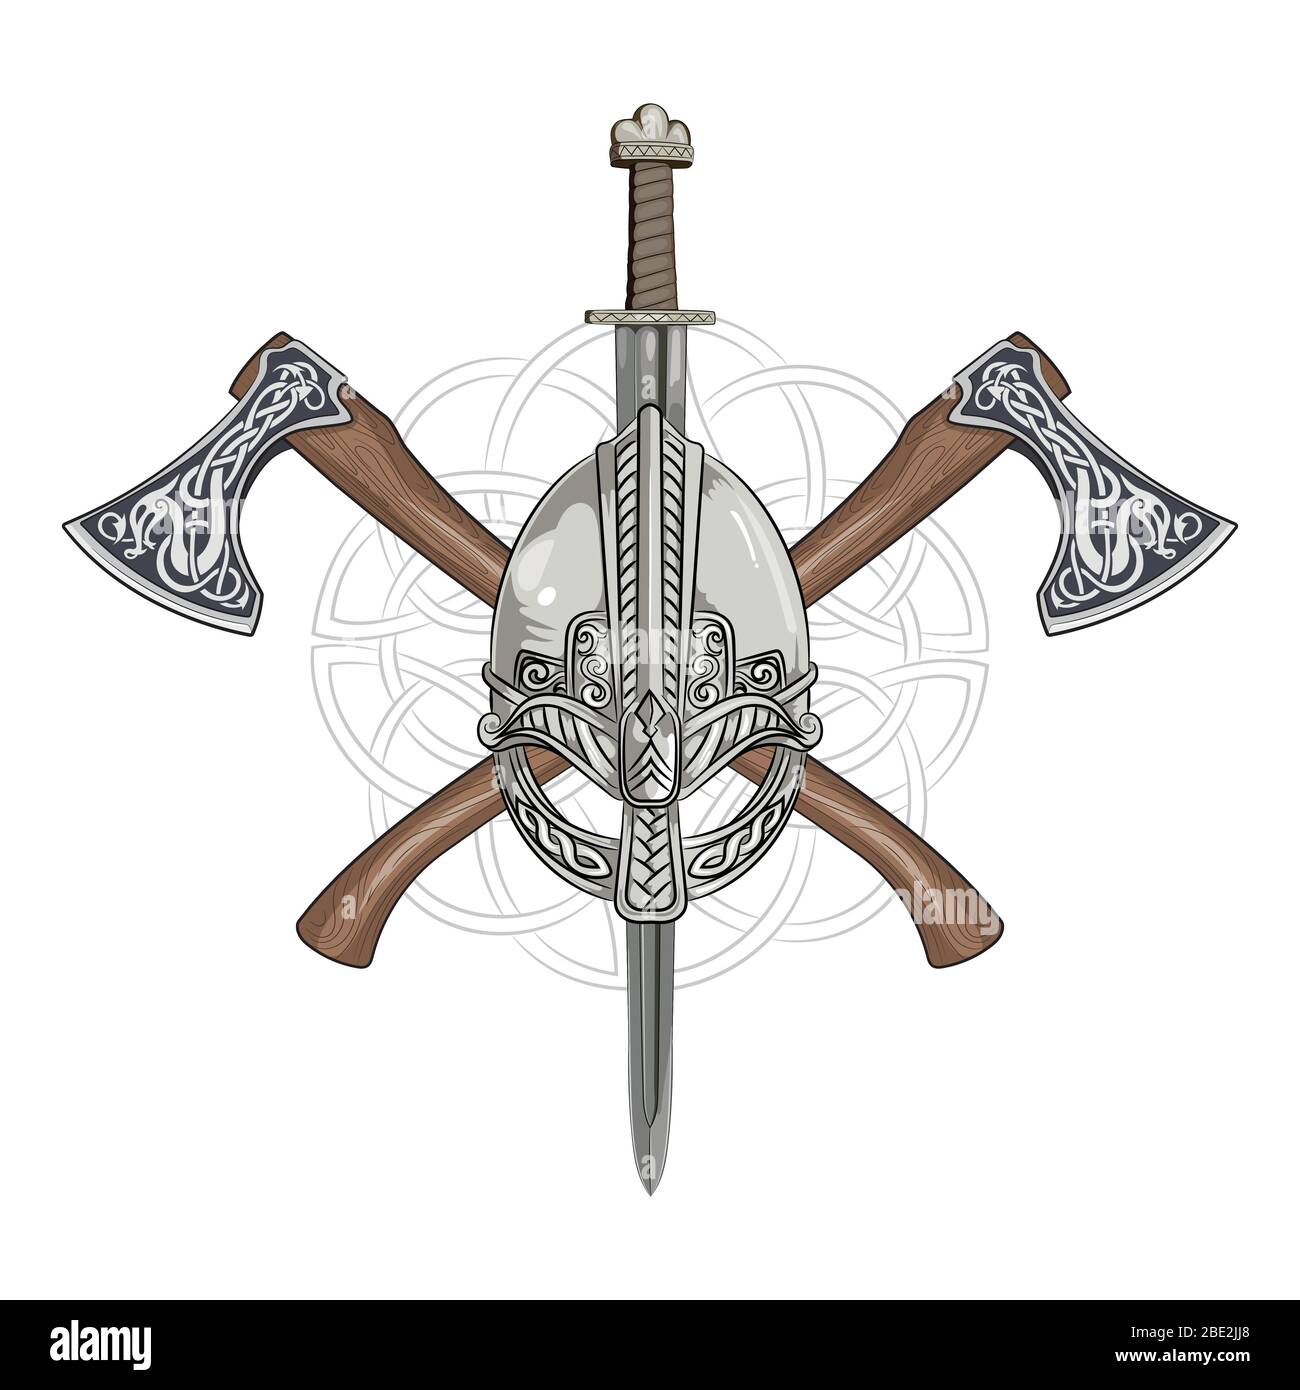 Casque Viking, haches viking croisées et couronne de style scandinave Illustration de Vecteur